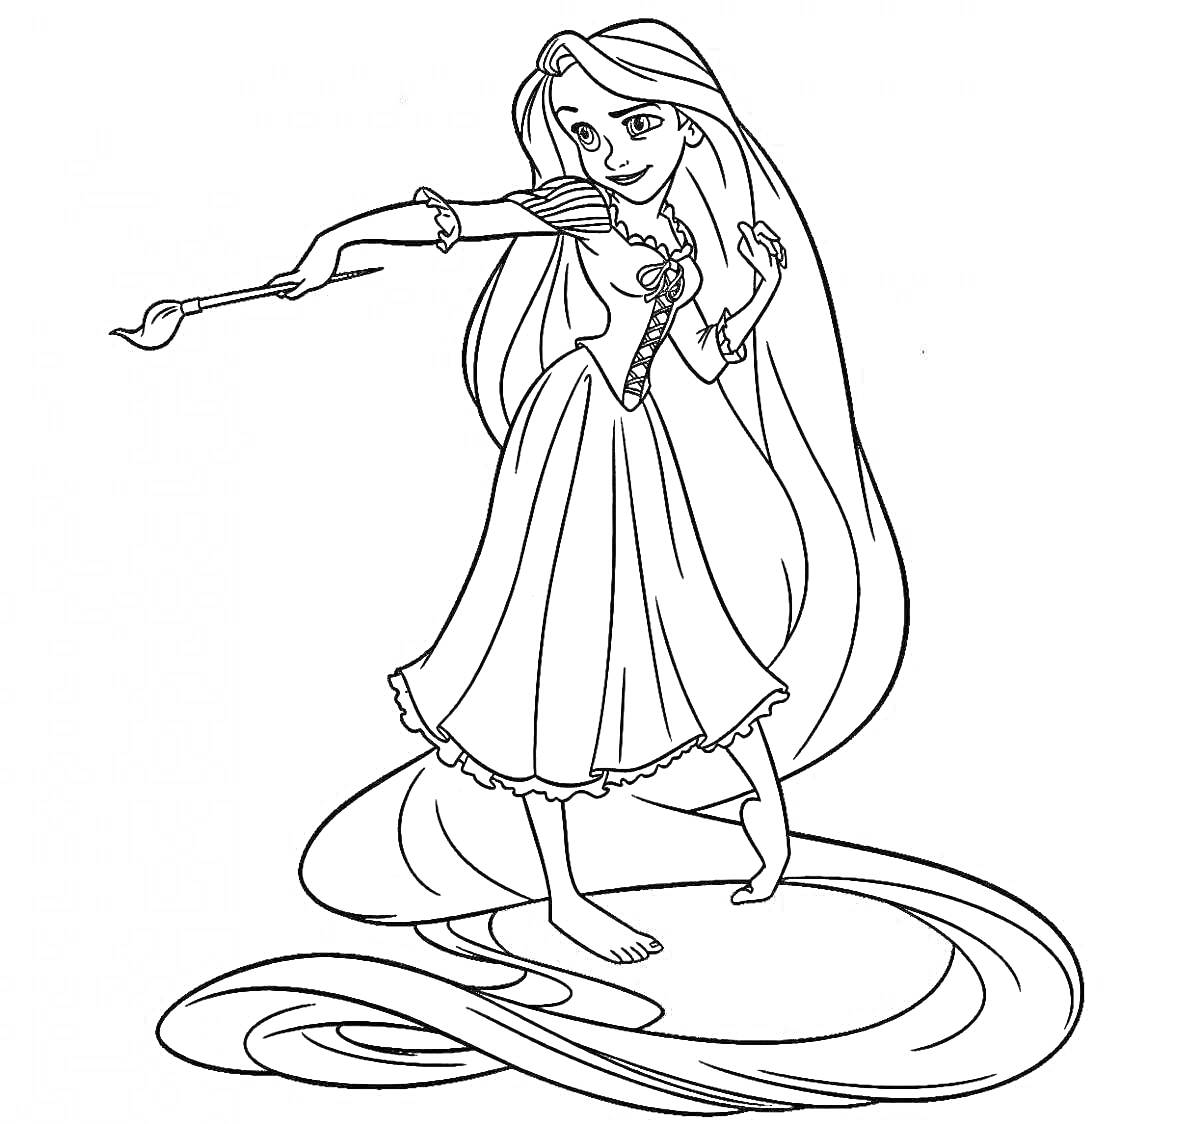 Раскраска Принцесса Рапунцель с длинными волосами и кисточкой в руке